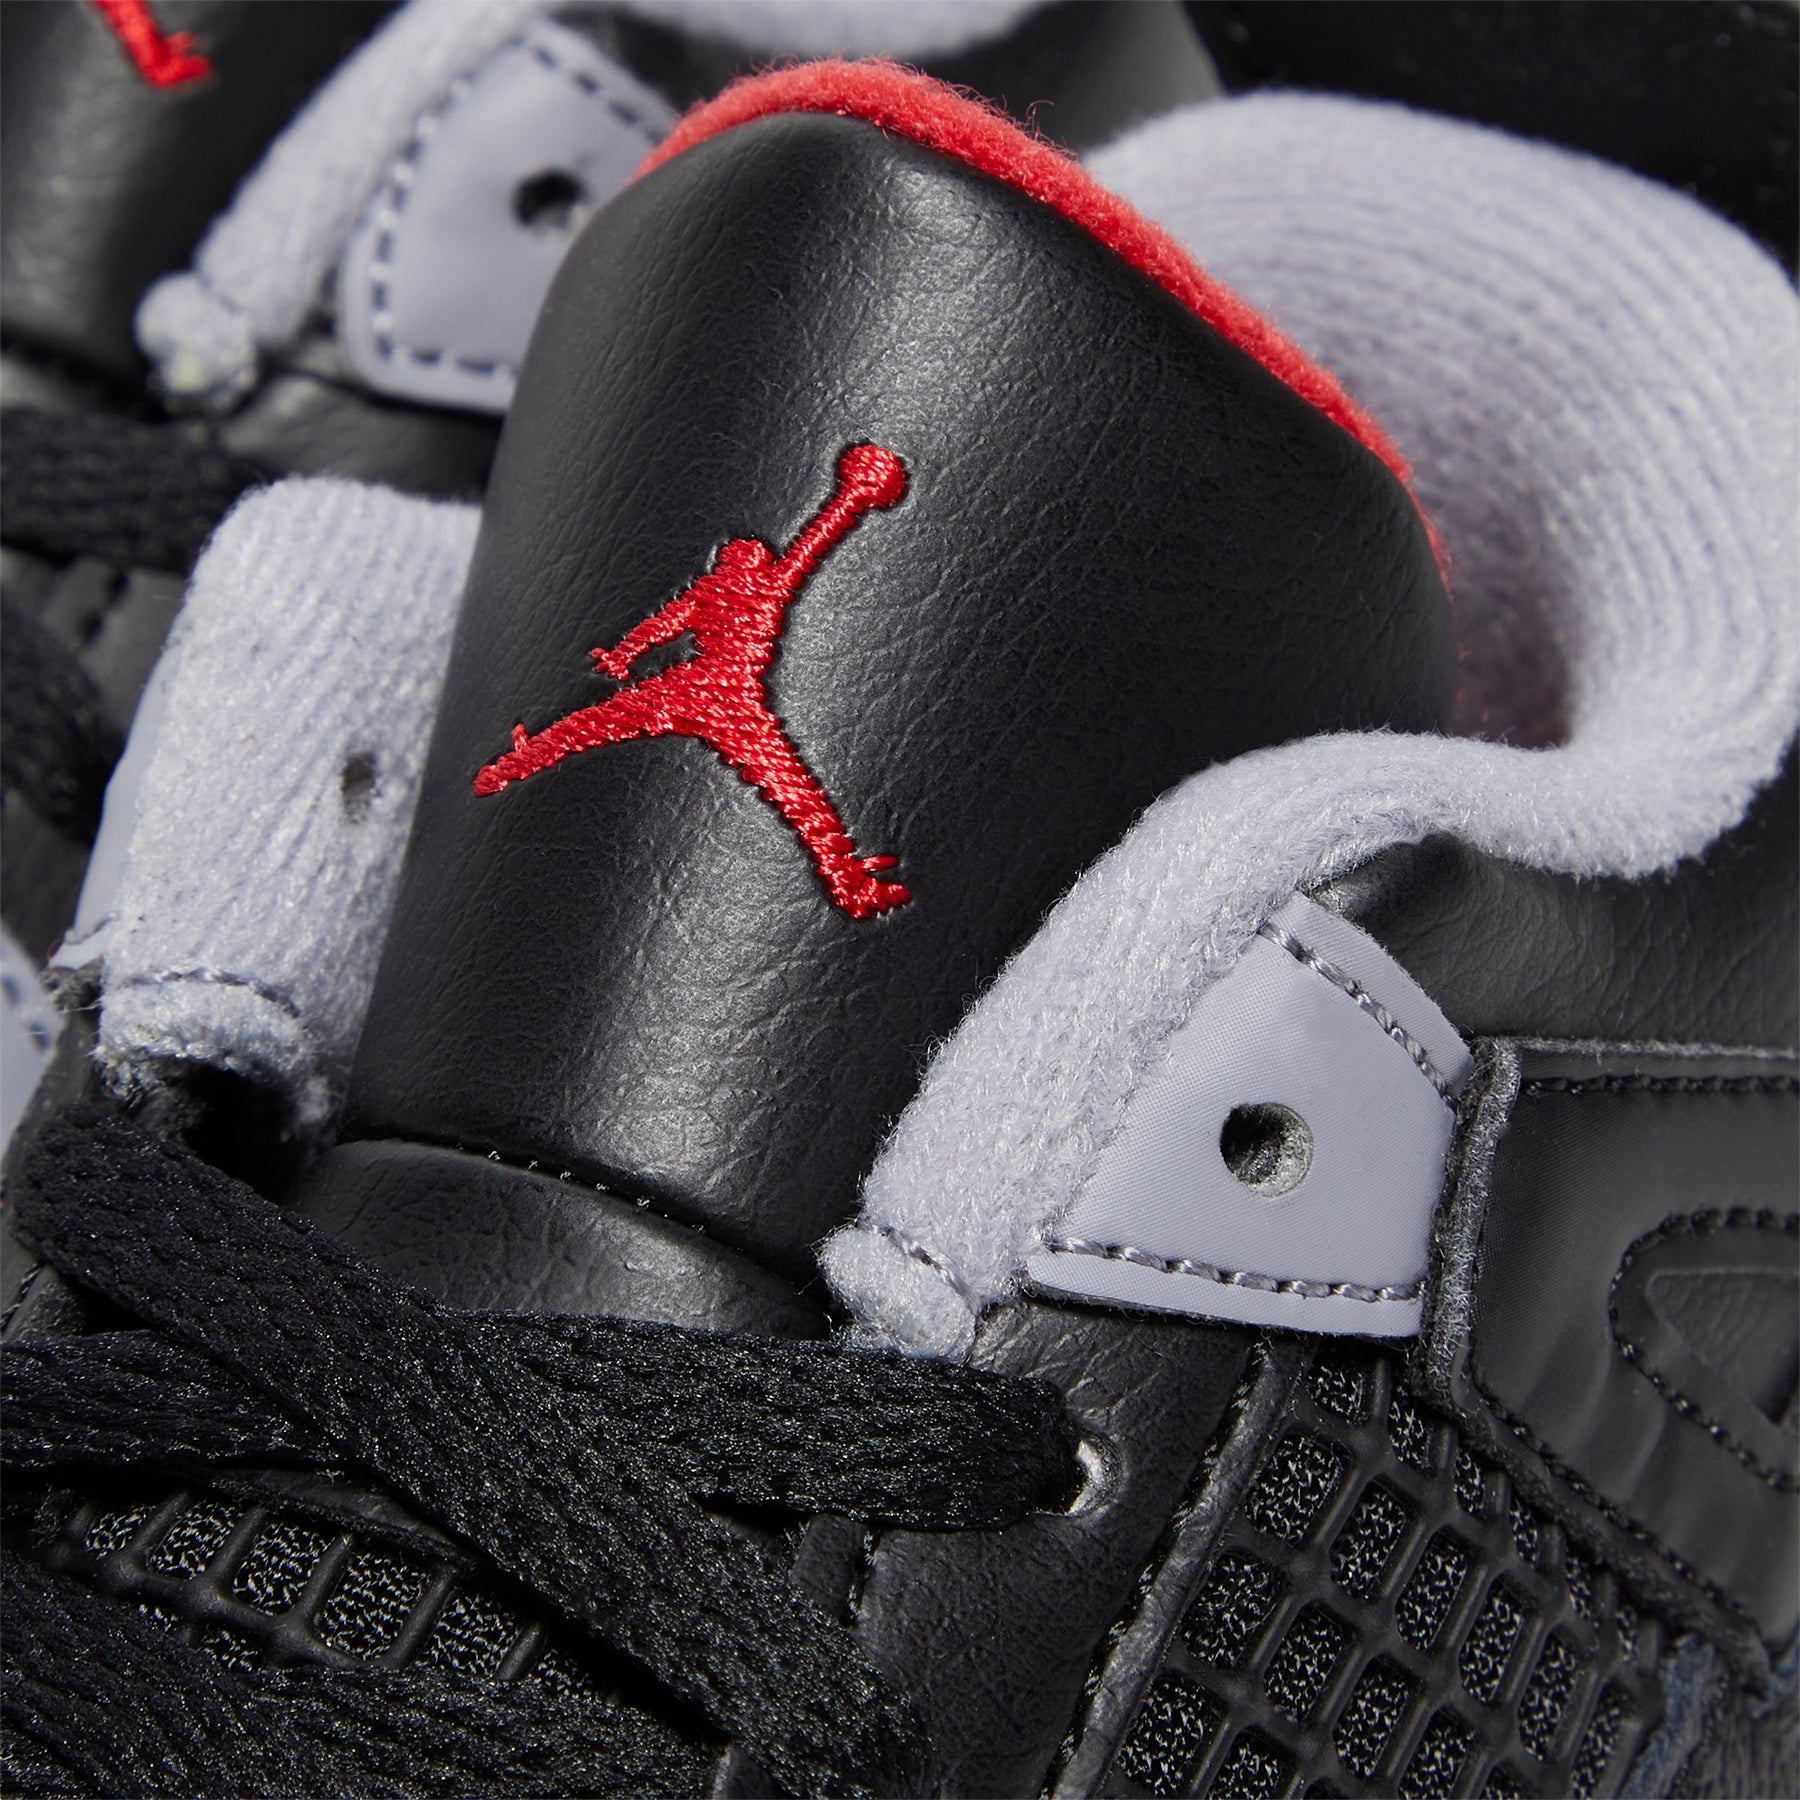 Jordan Air Jordan 4 Retro 'Red Cement’ Toddler